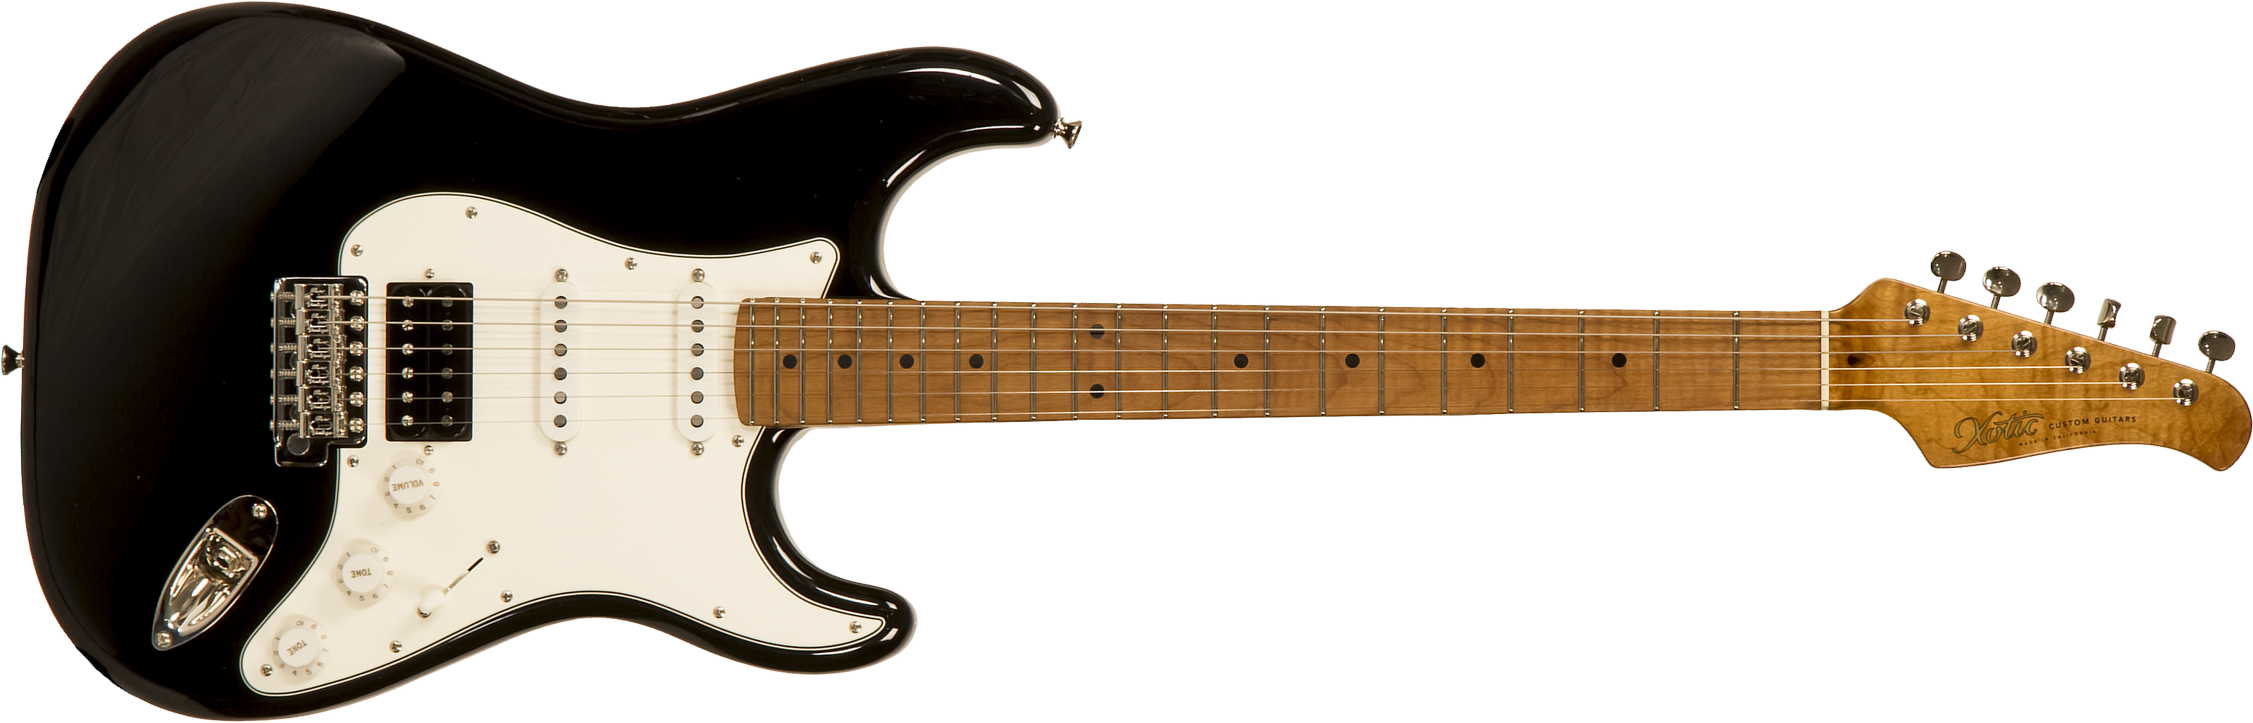 Xotic Xscpro-2 California Class Hss Mn #2113 - Light Aging Black - Elektrische gitaar in Str-vorm - Main picture